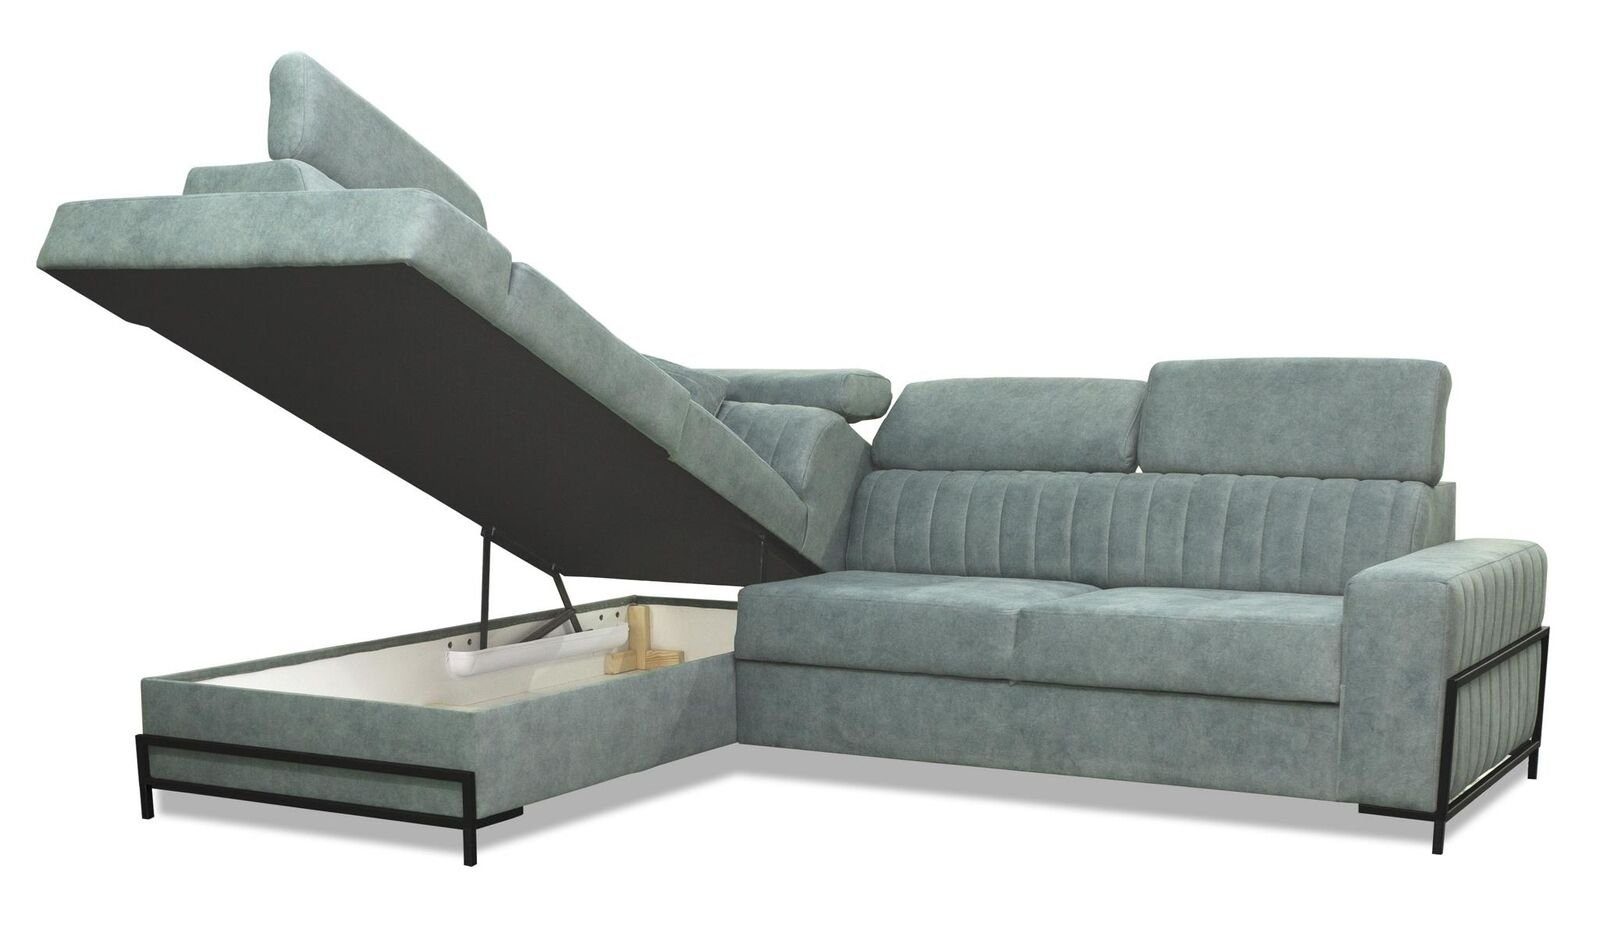 JVmoebel Ecksofa, Wohnzimmer L-Form Modern Sofa Couch Ecke Stoff Textil Design Luxus